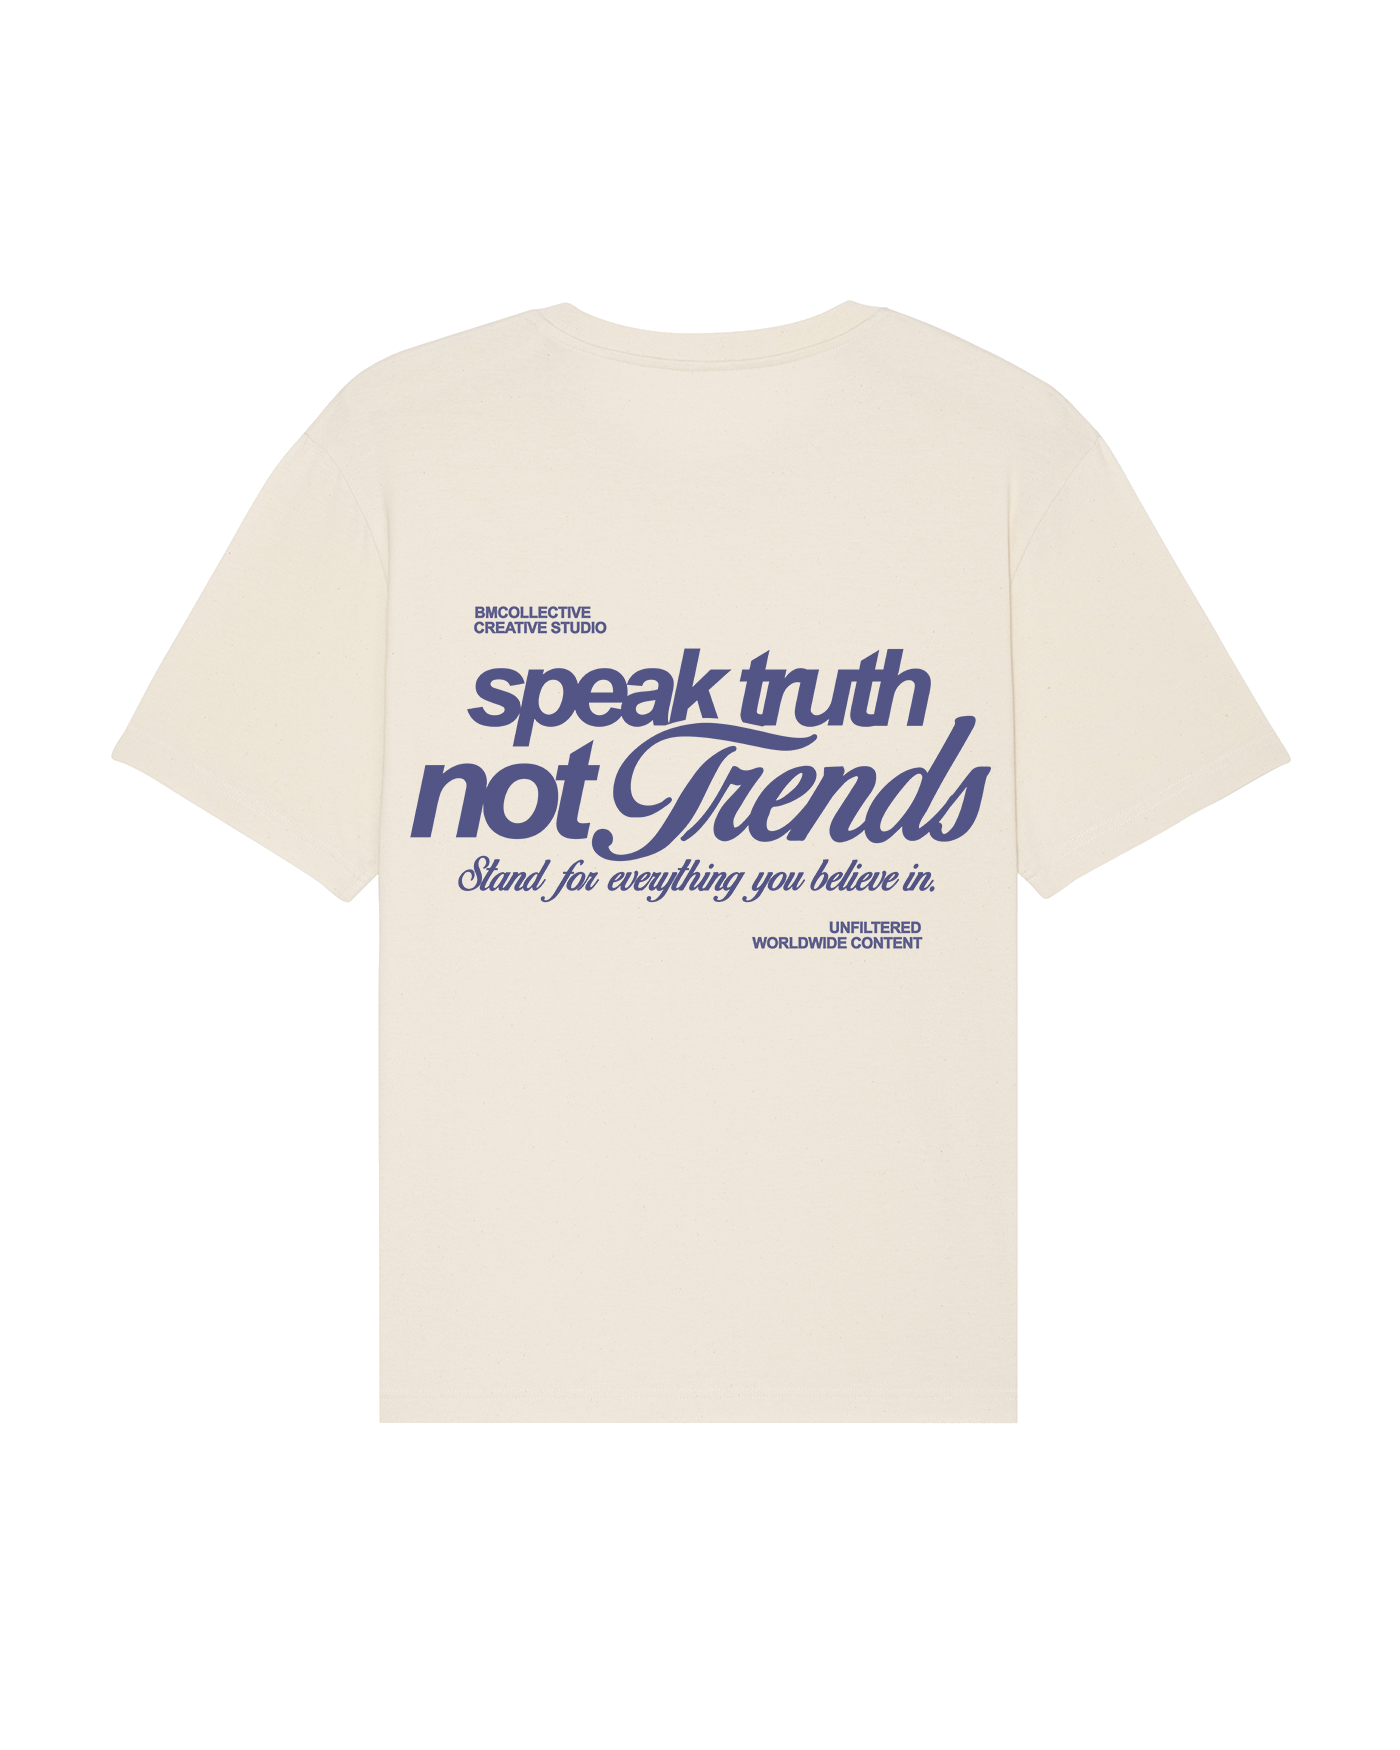 Speak Truth Not Trends Tee